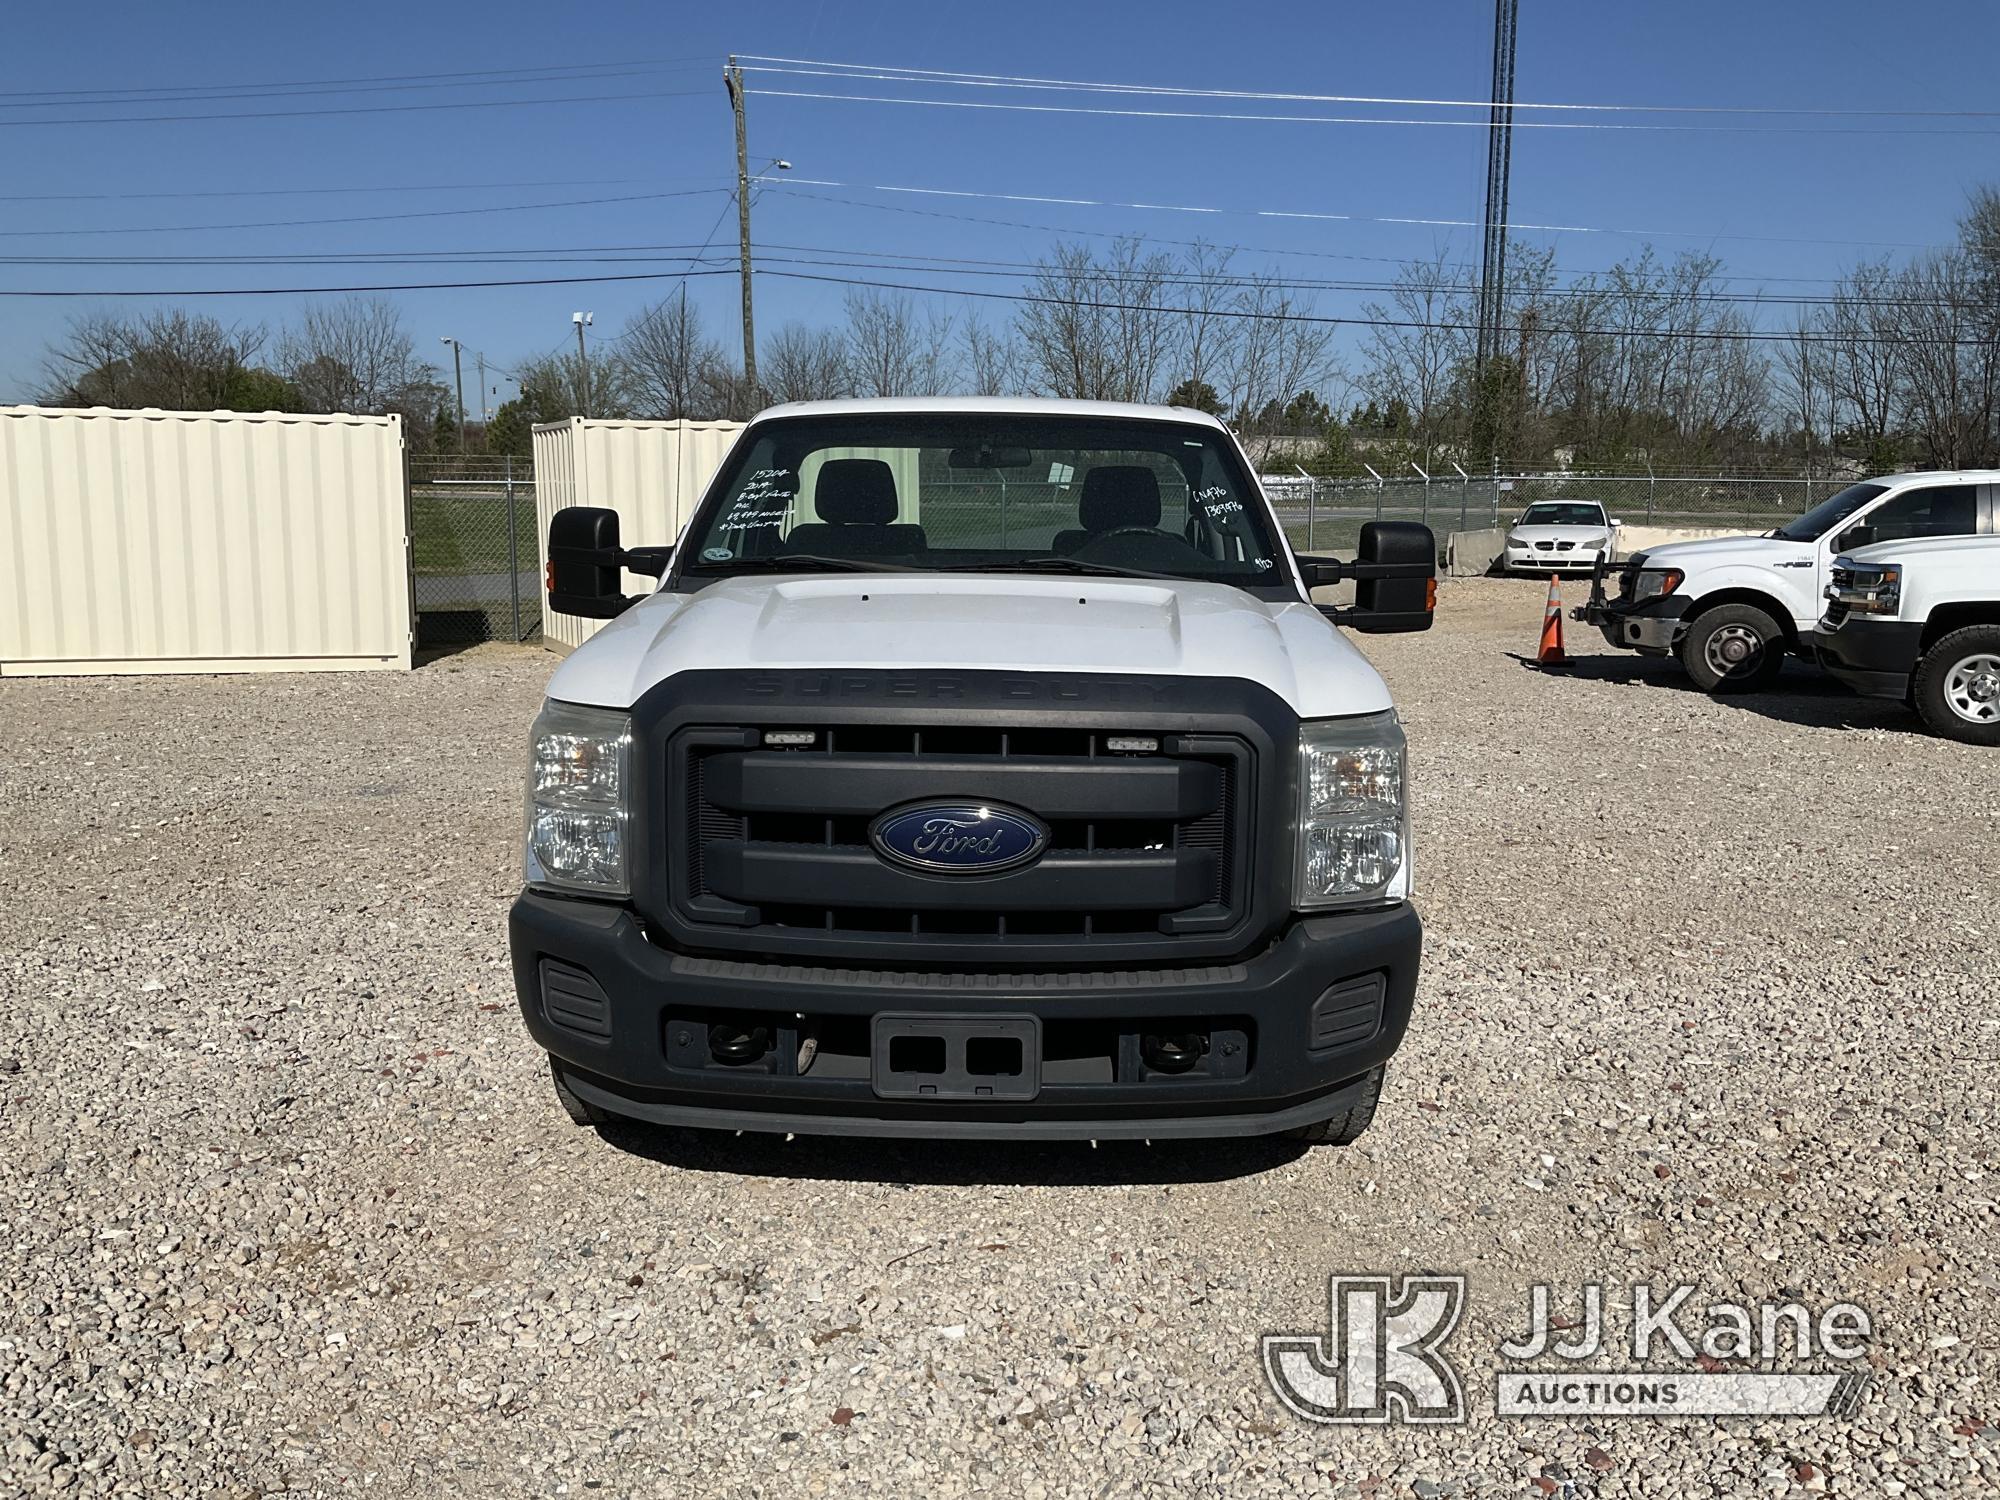 (Charlotte, NC) 2014 Ford F250 Pickup Truck Duke Unit) (Runs & Moves